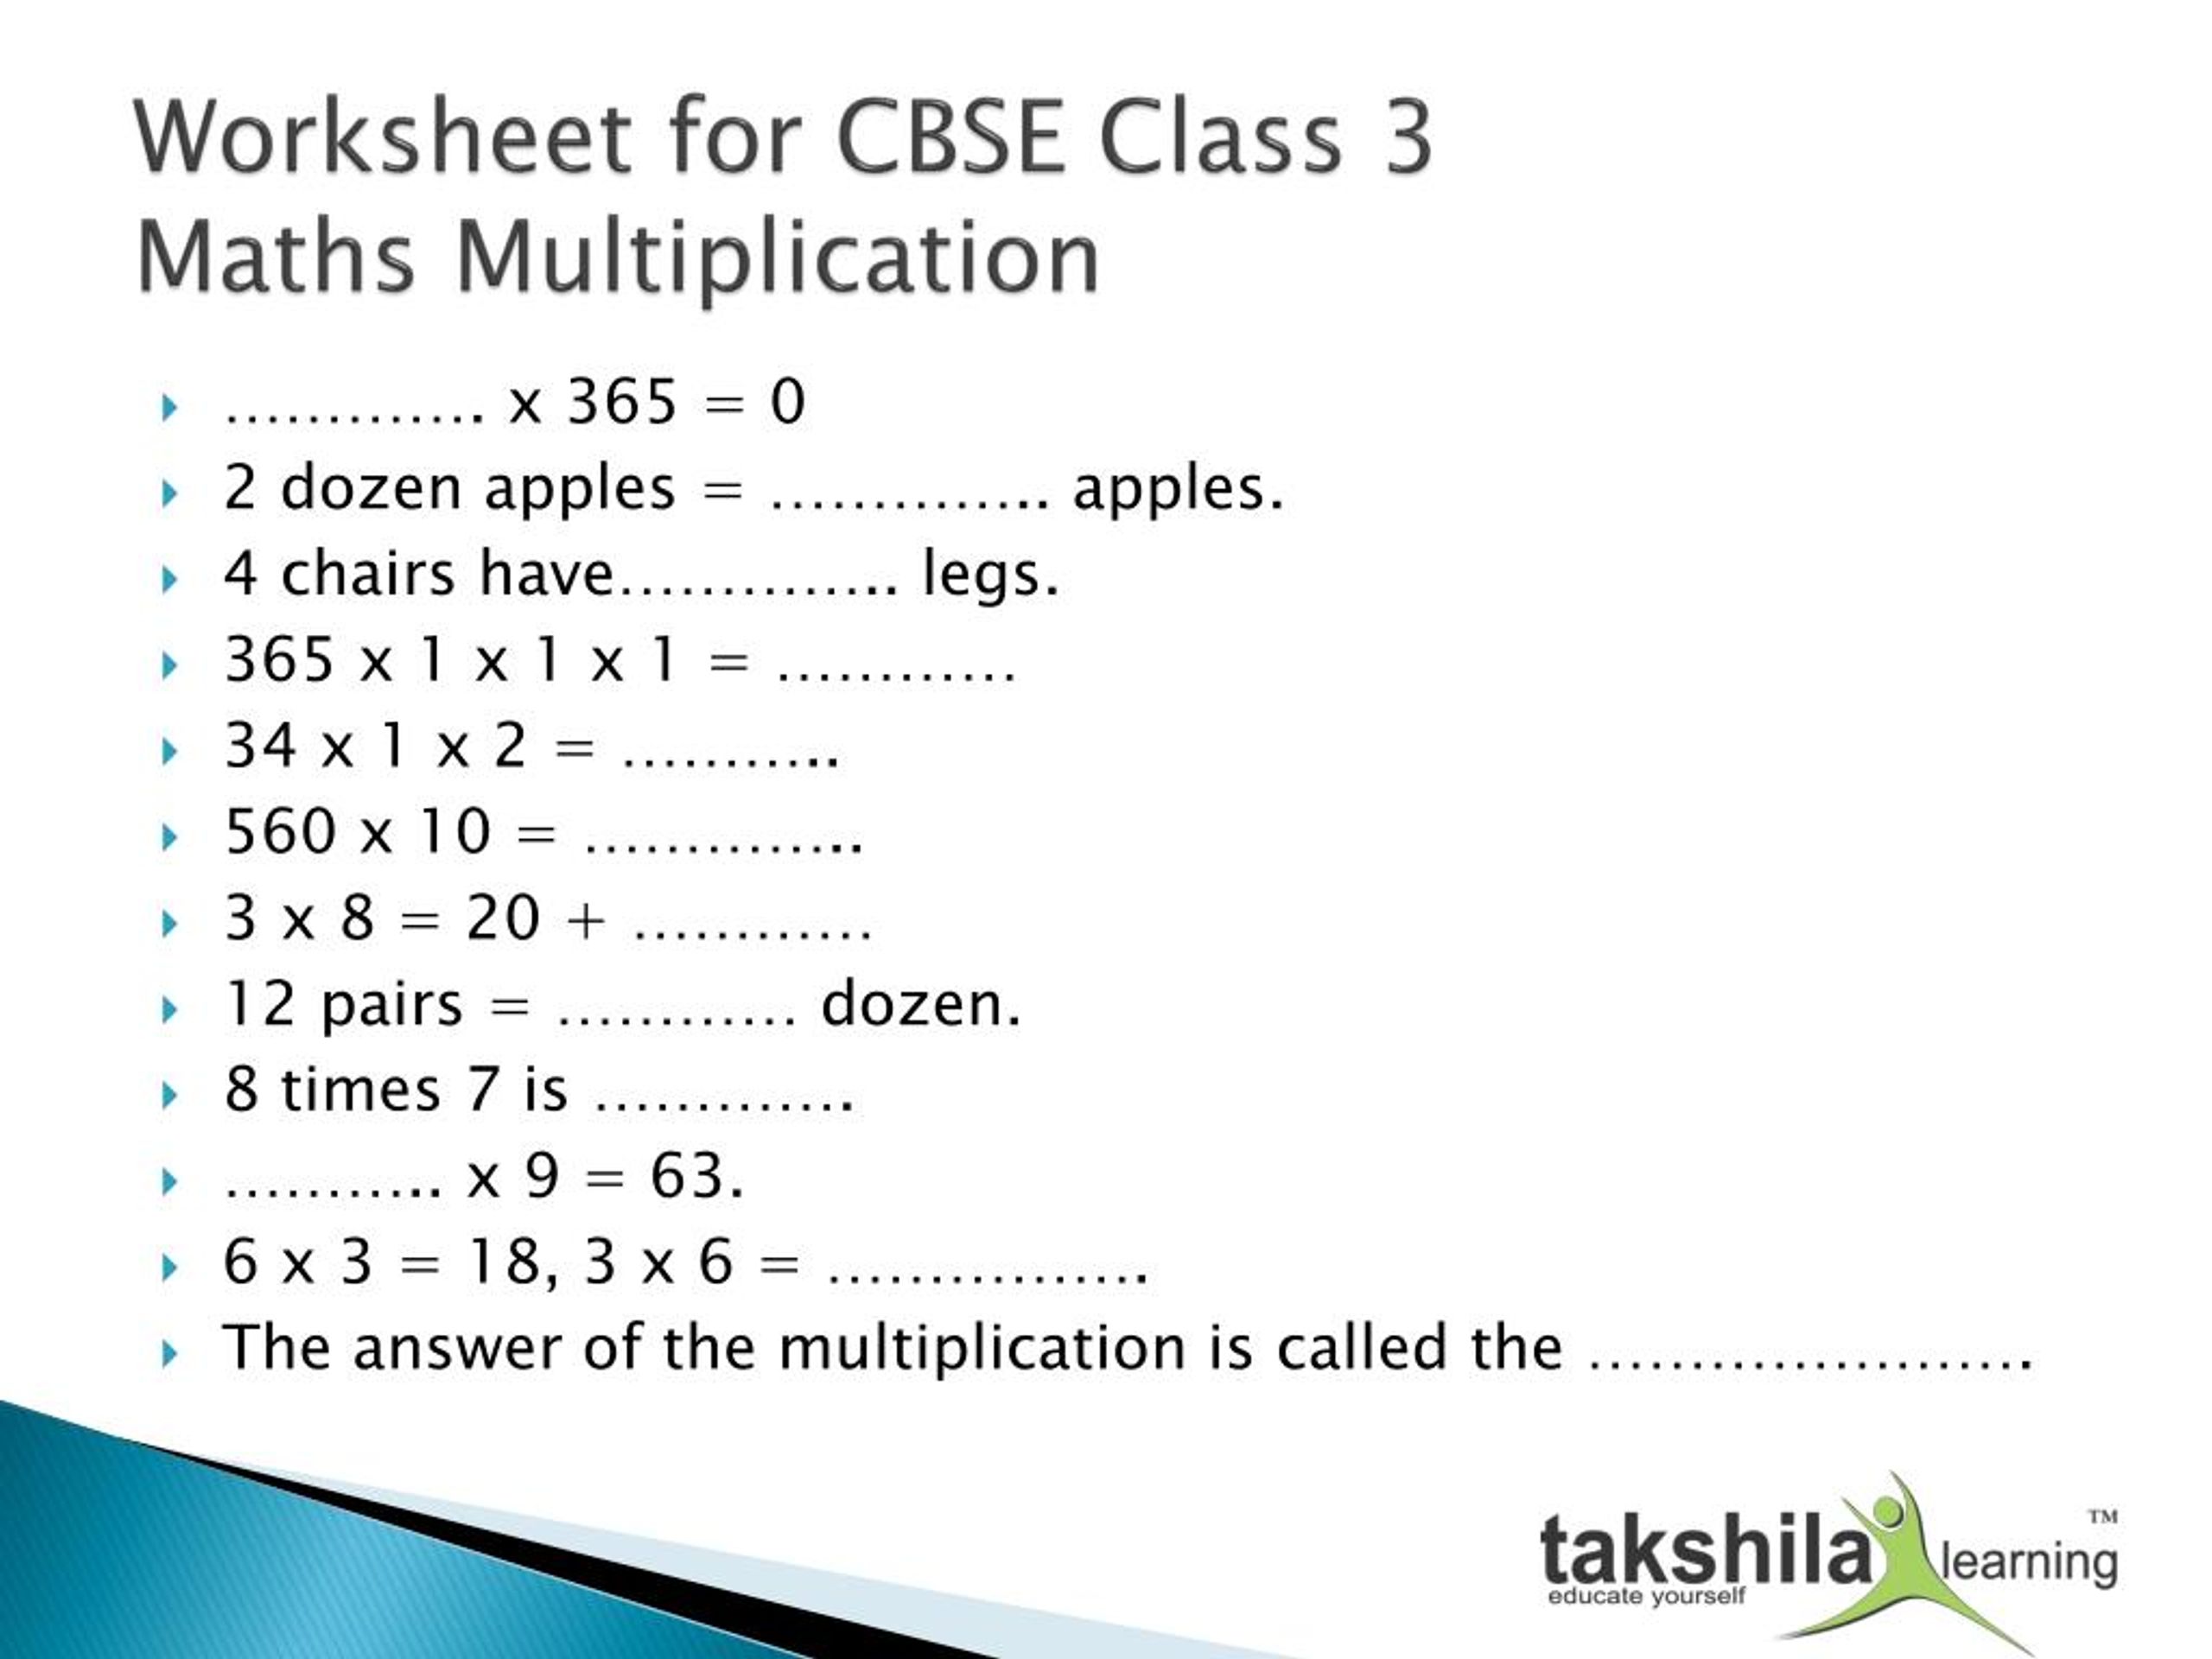 Kvs Class 2 Maths Worksheet Uptoschoolworksheets For Class 1 Class 2 Class 3 Class 4 Class 5